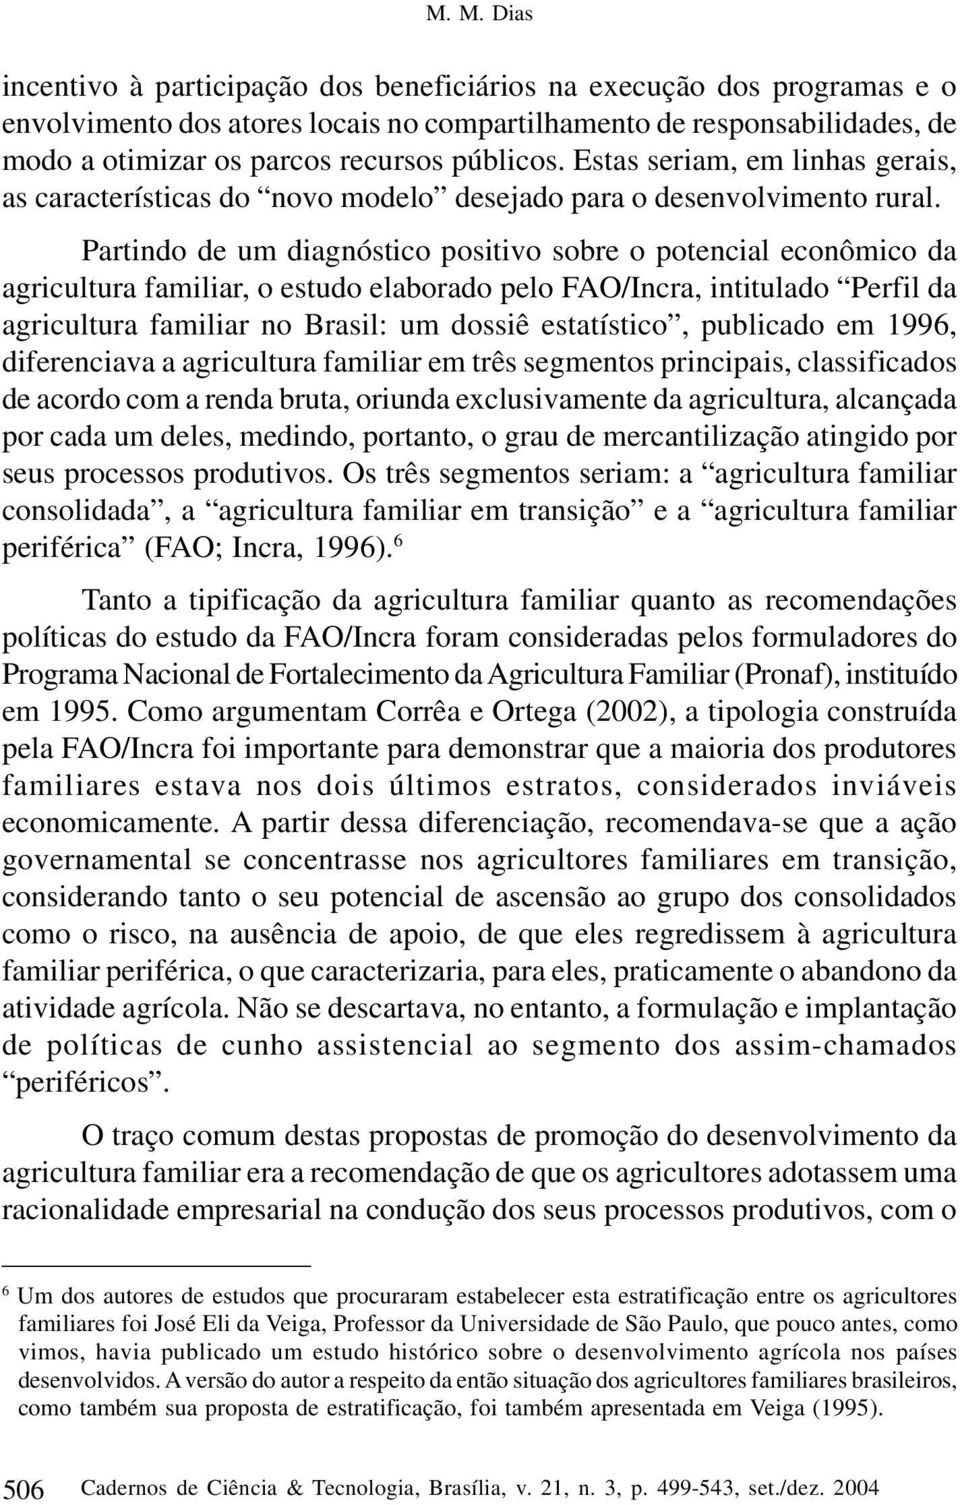 Partindo de um diagnóstico positivo sobre o potencial econômico da agricultura familiar, o estudo elaborado pelo FAO/Incra, intitulado Perfil da agricultura familiar no Brasil: um dossiê estatístico,